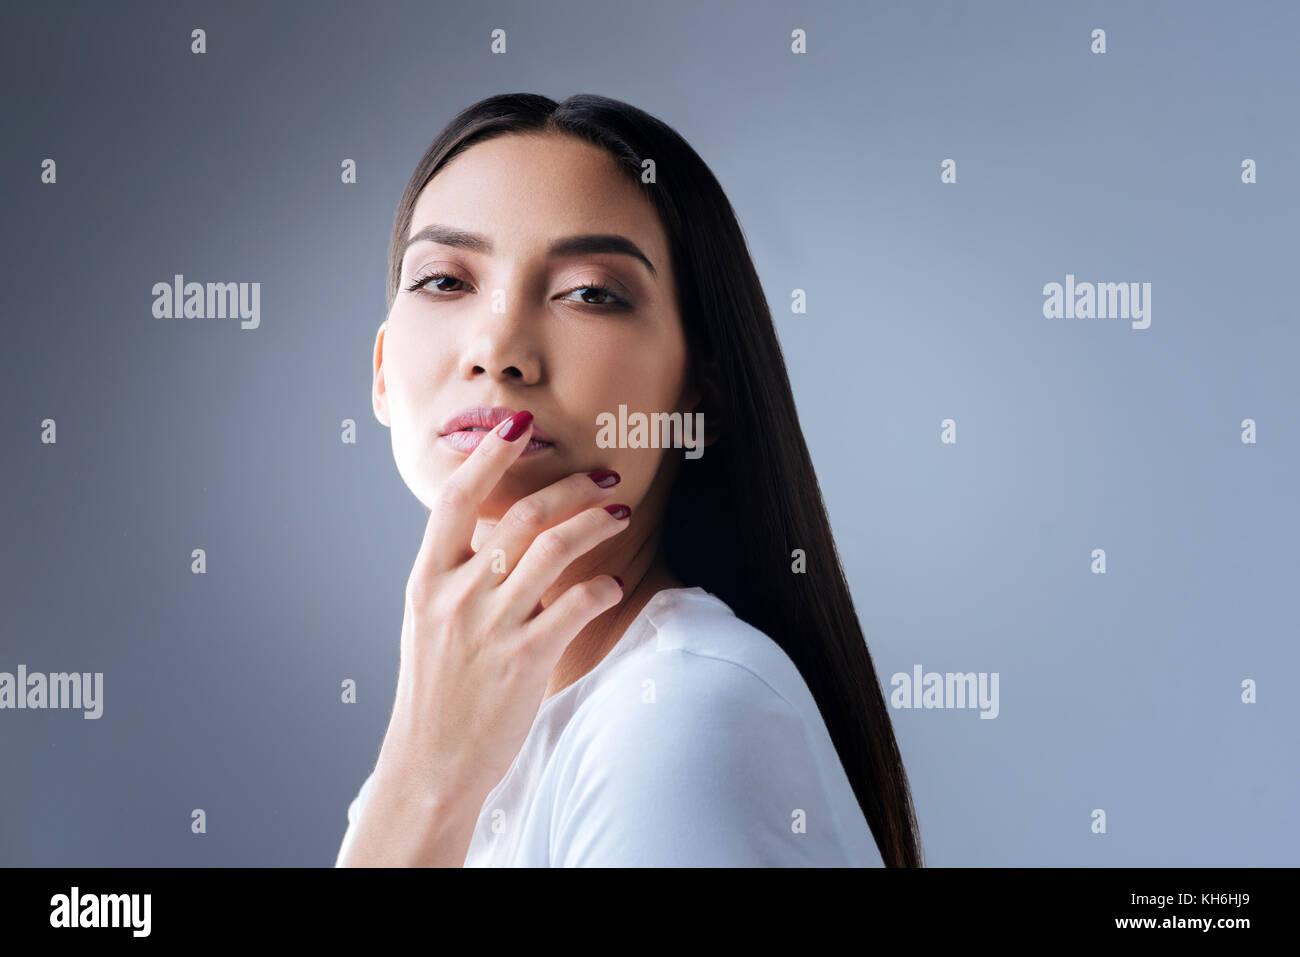 Jeune femme passionnée de toucher ses lèvres roses et légèrement smiling Banque D'Images